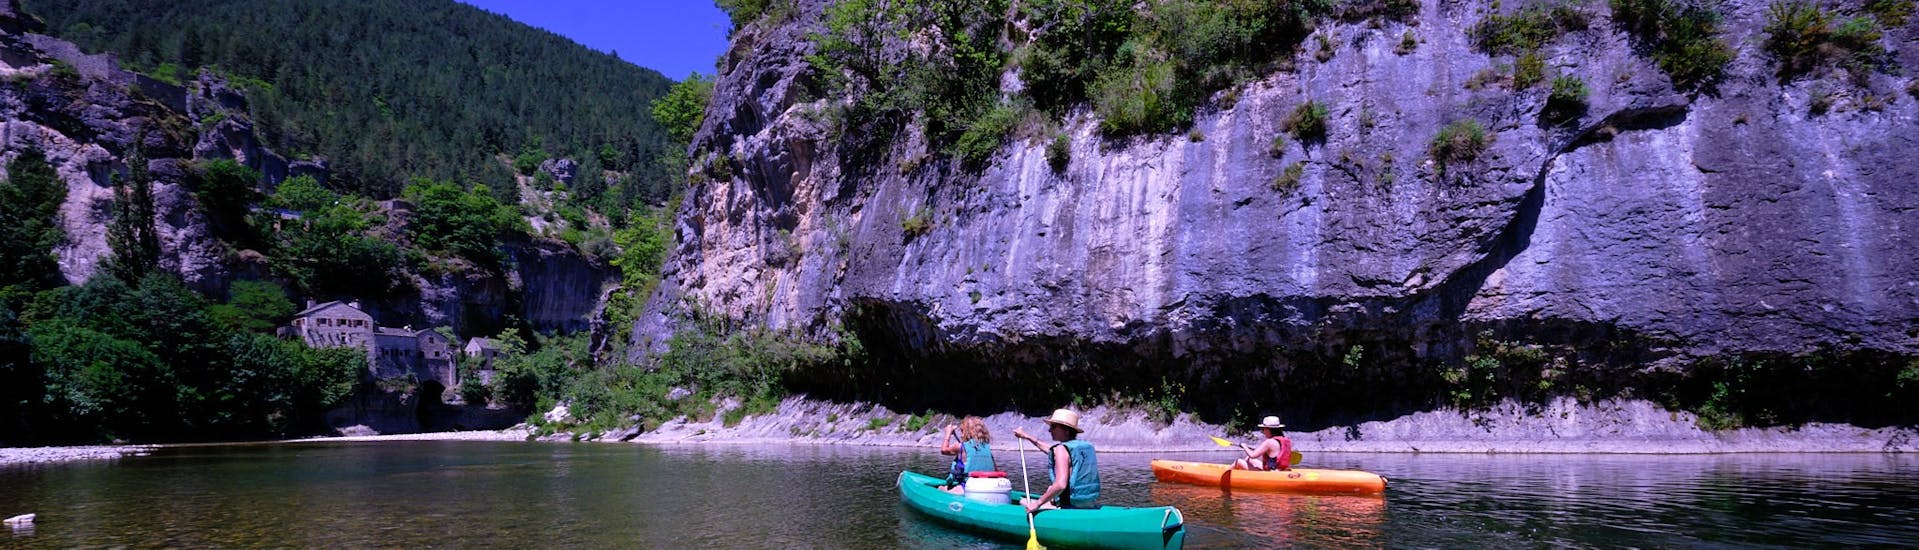 12km Kayak & Canoe on Tarn River in Sainte-Énimie - Classic.